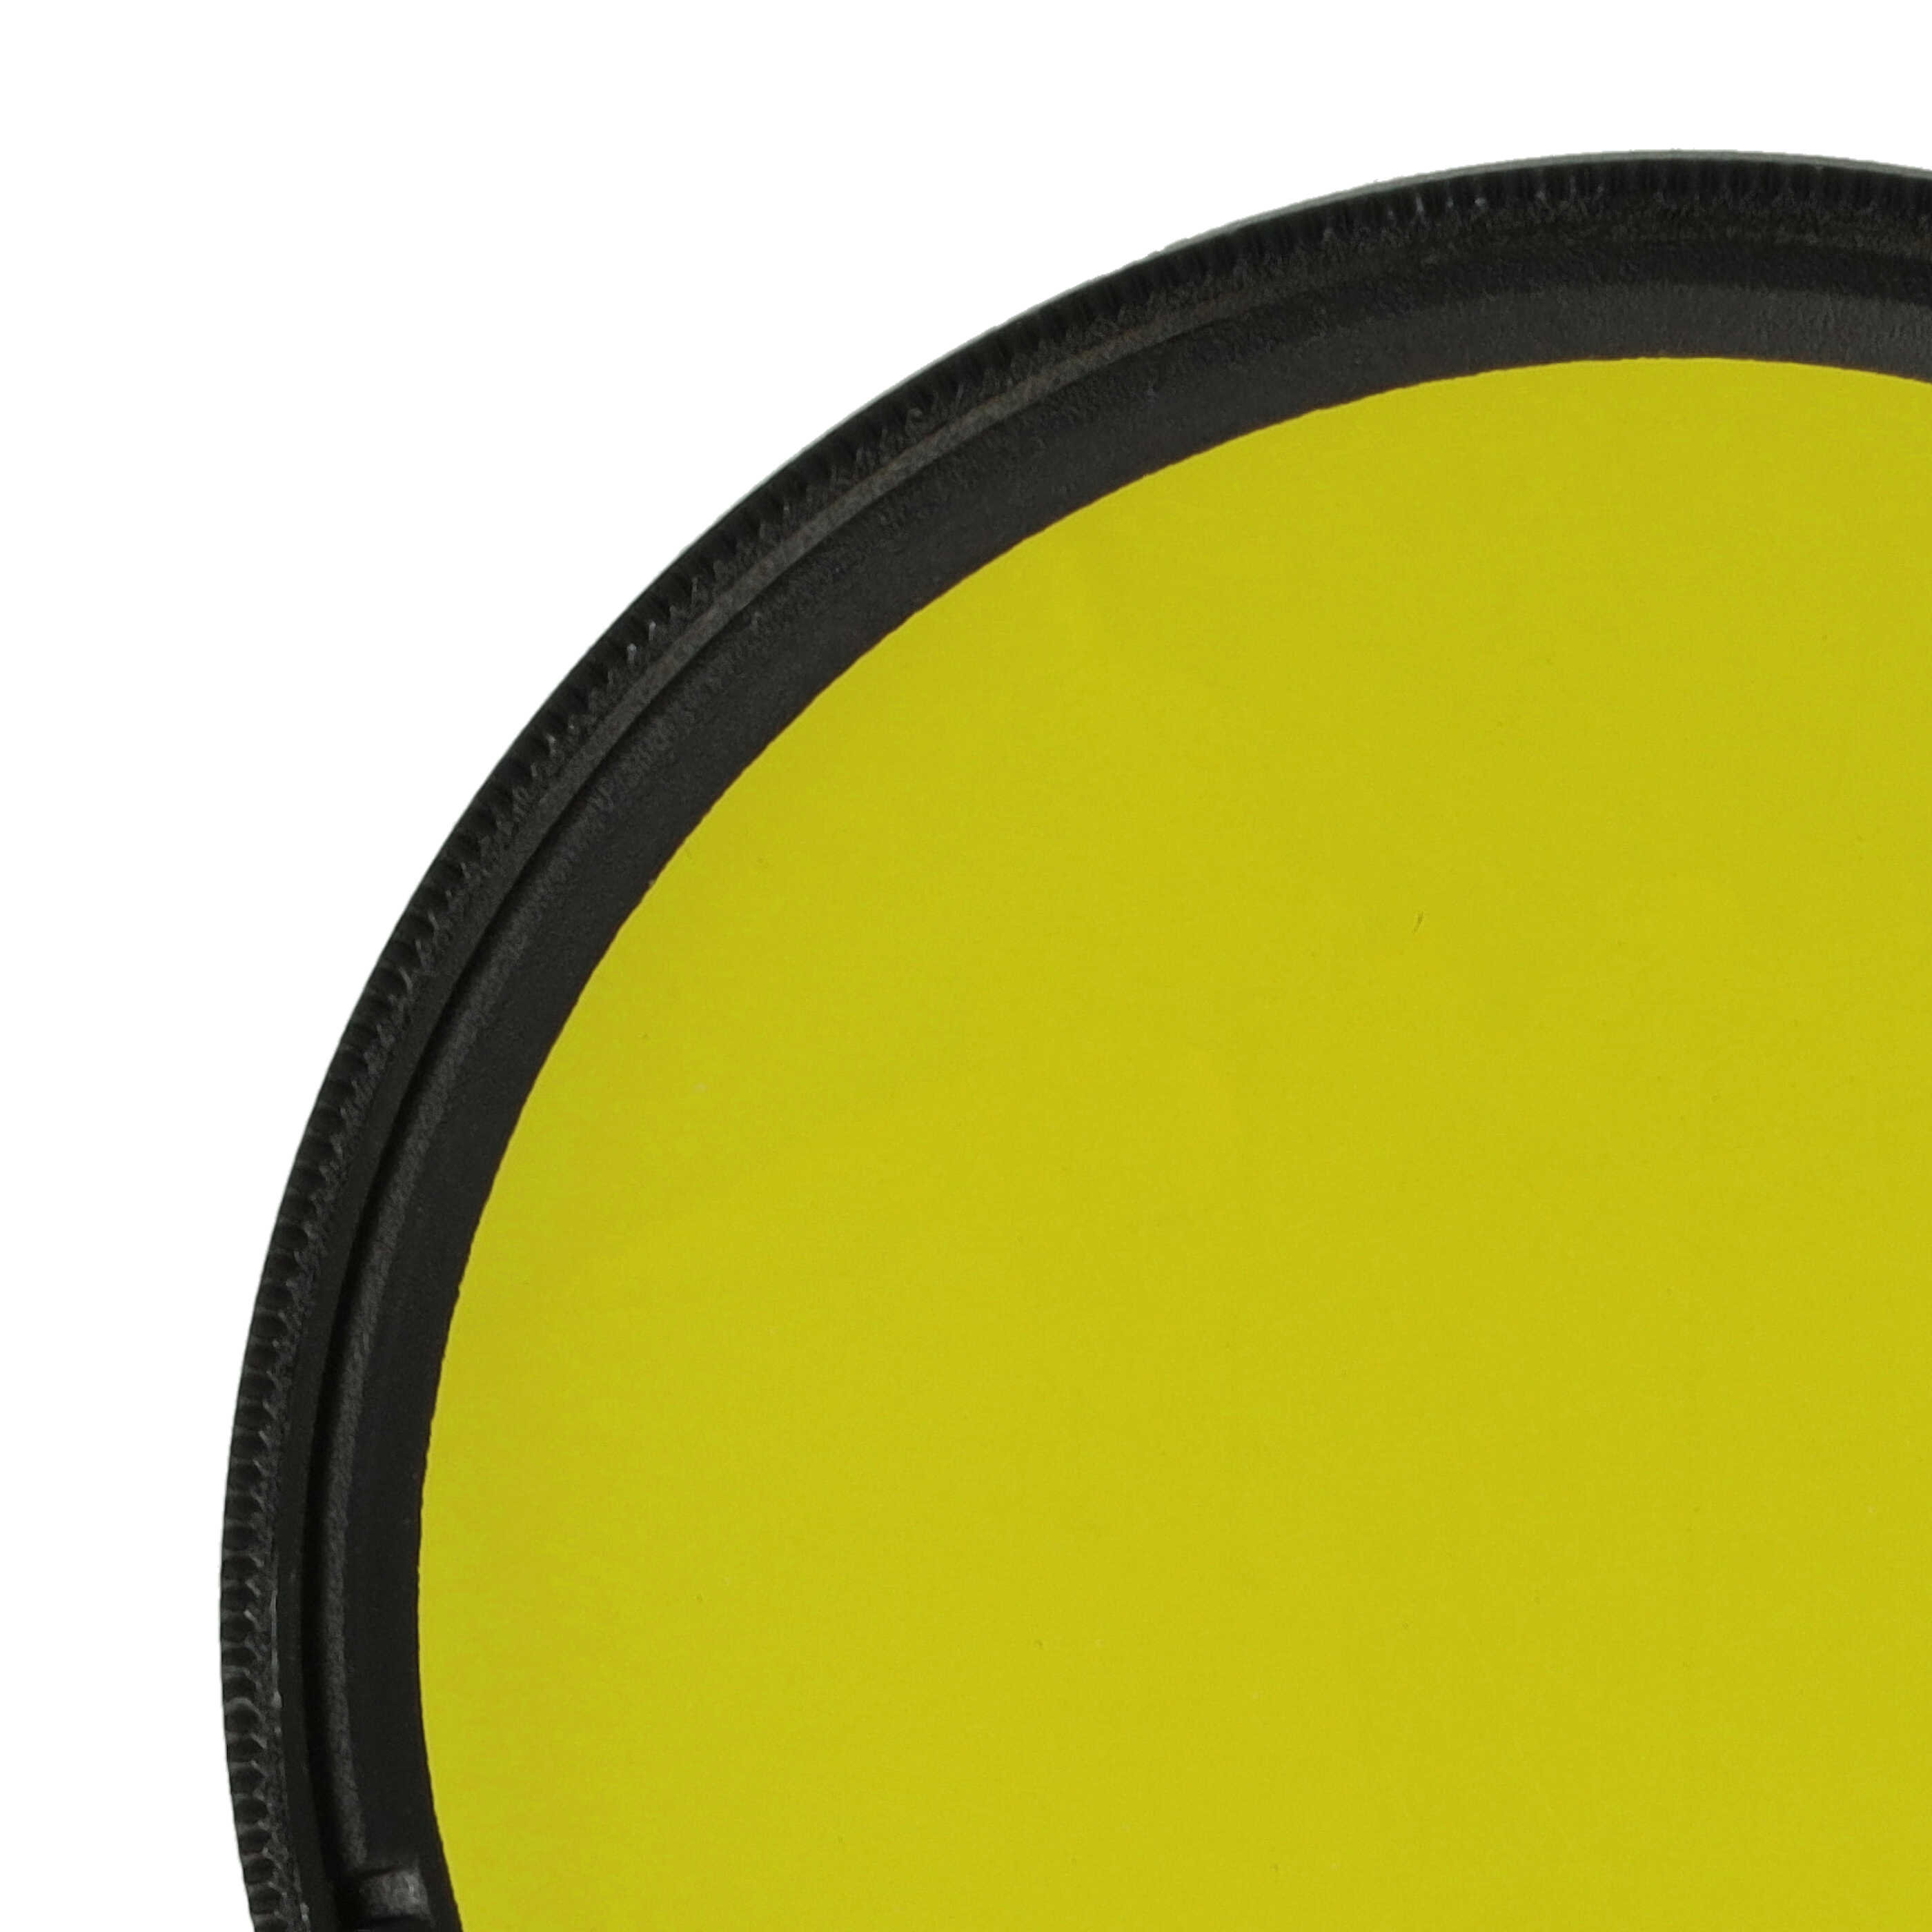 Filtre de couleur jaune pour objectifs d'appareils photo de 55 mm - Filtre jaune